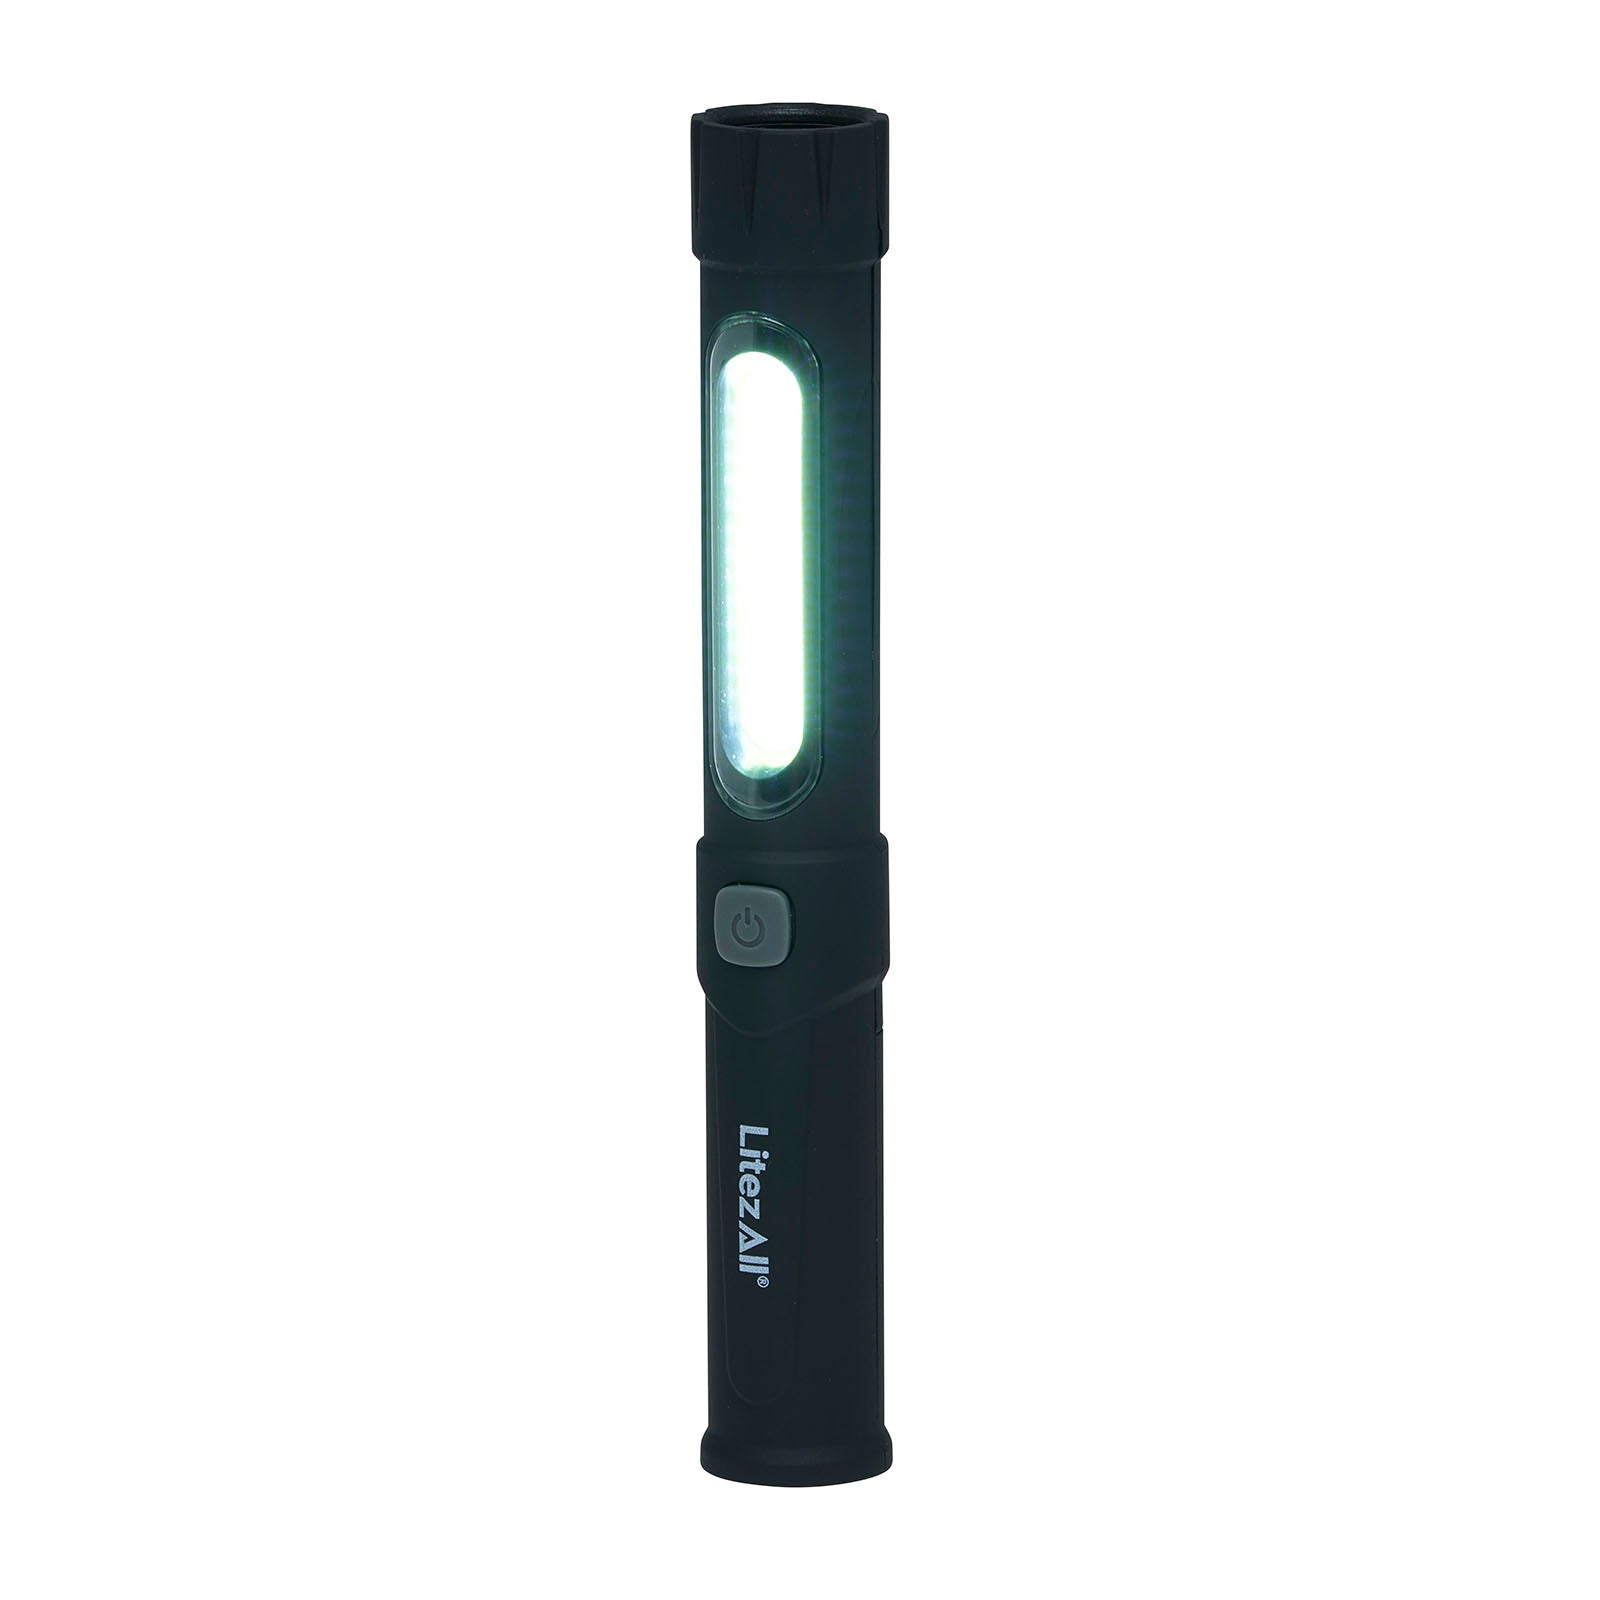 LitezAll 100 Lumen Task Light with Flashlight